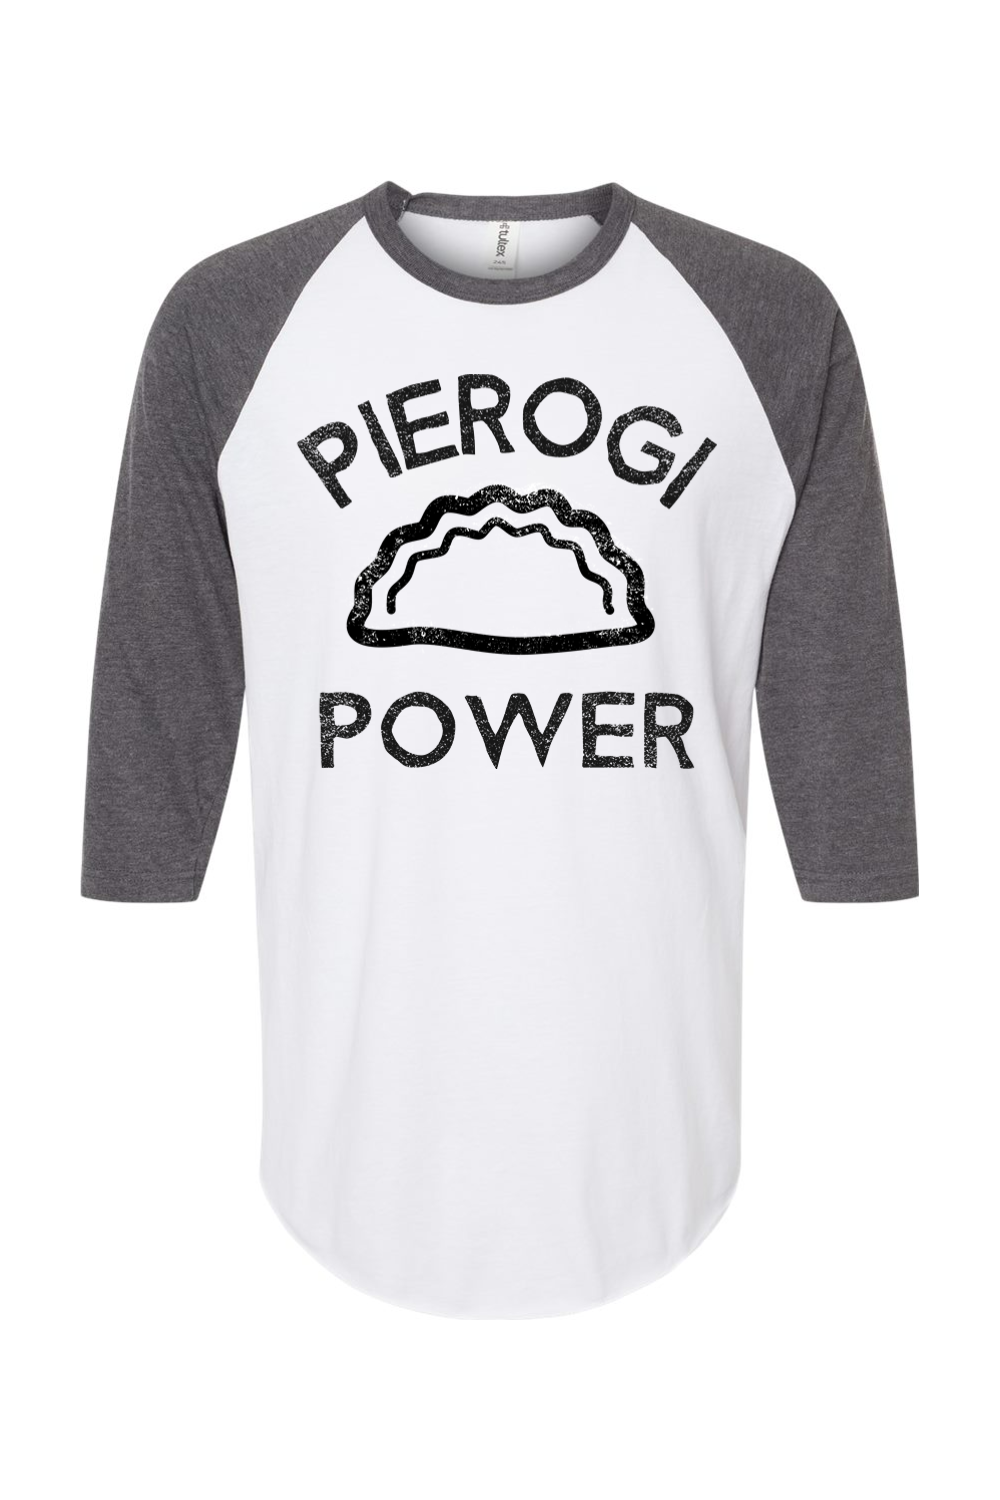 Pierogi Power - Raglan T-Shirt - Yinzylvania